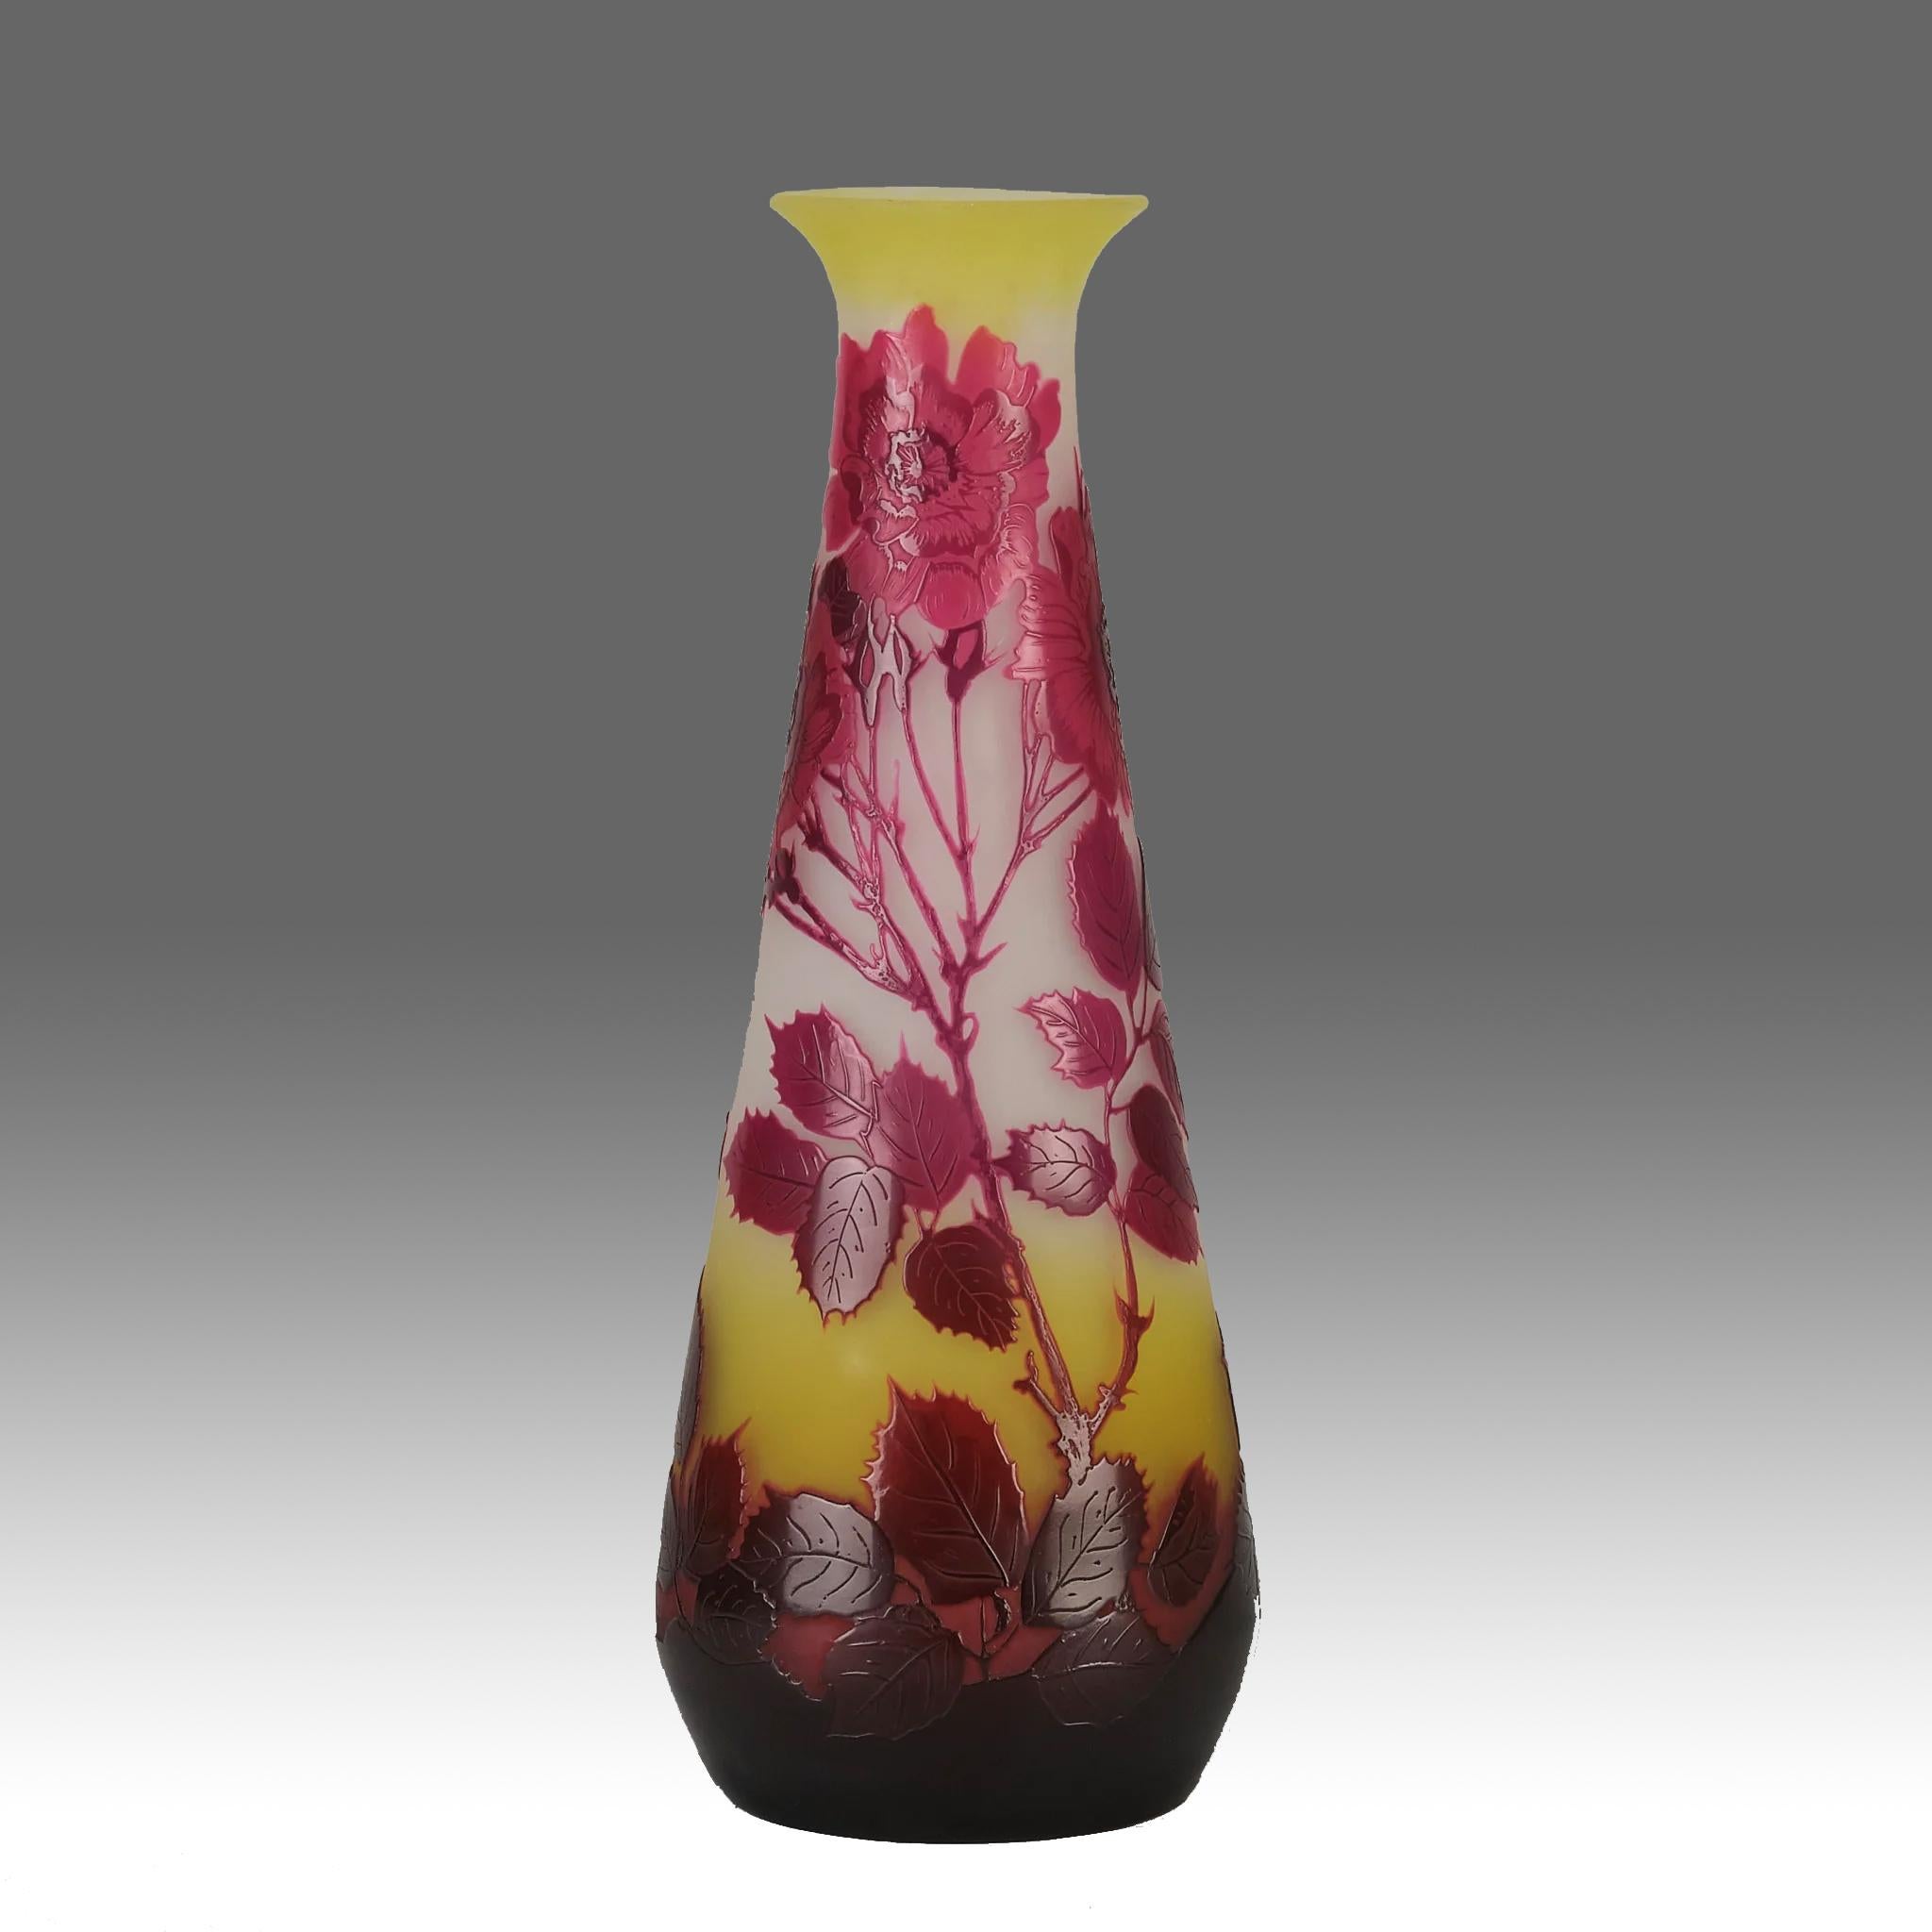 Magnifique vase en verre camée français de la fin du XIXe siècle, décoré d'un très beau motif floral rose foncé et rouge de roses sauvages sur un fond jaune chaud. Les détails et les couleurs sont excellents. L'œuvre est signée Galle en